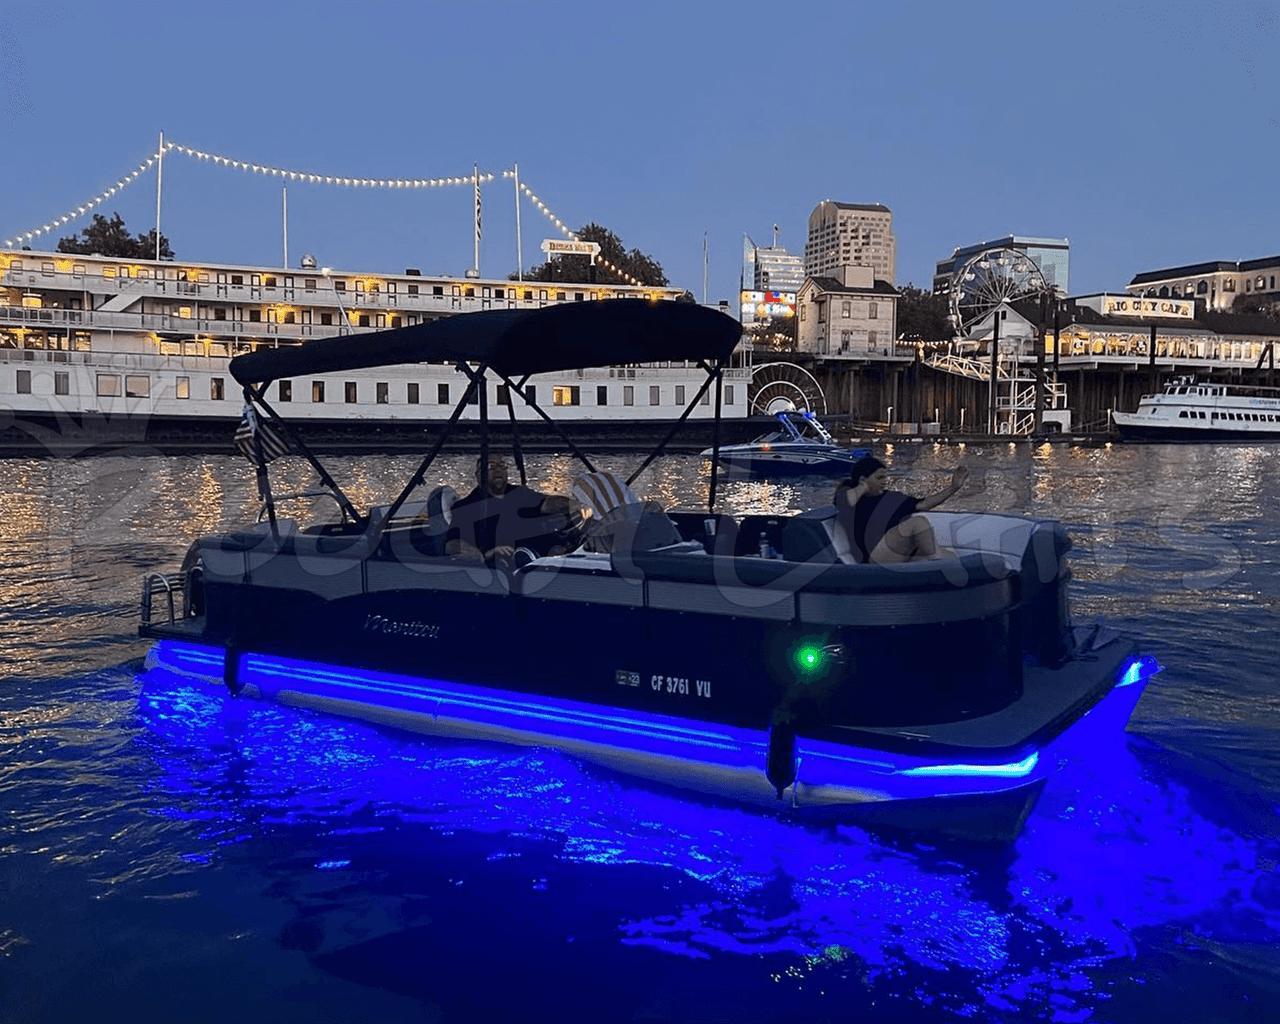 Night Chaser LED Fishing Black Light for Boats UV 12v